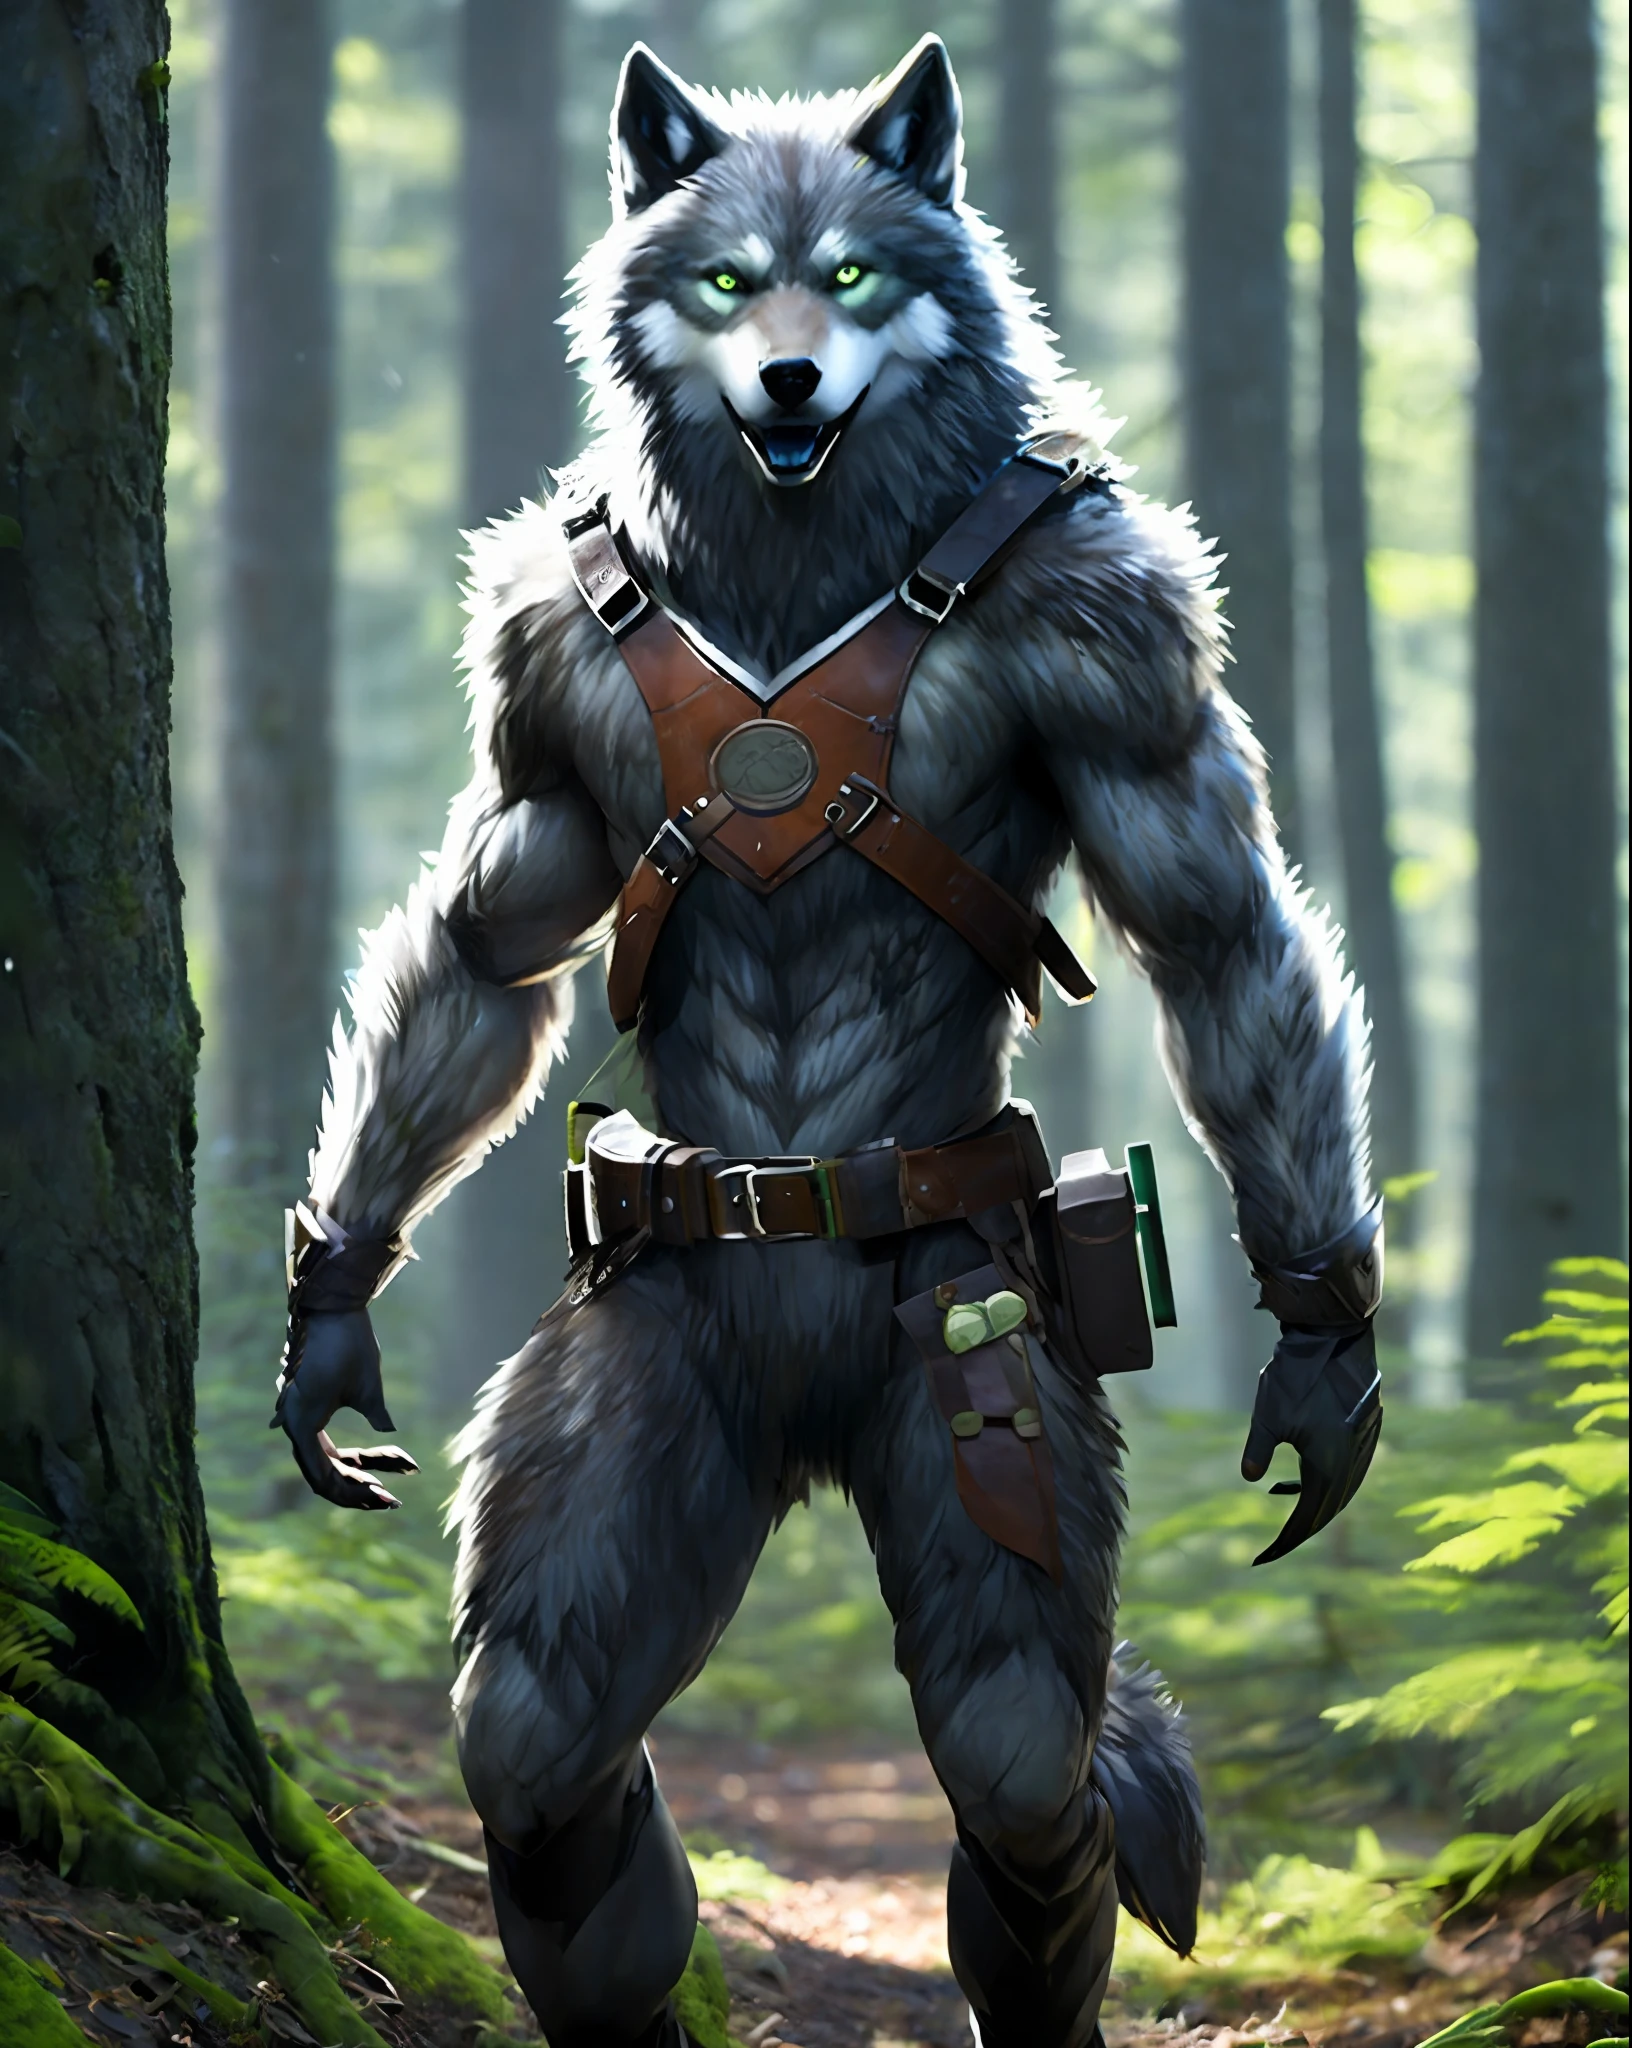 Fking_sciFi_v2, hombre criatura, werewolF wolF, cabeza grande, (ojos verdes), standing in a Forest, cinturón para herramientas, 80mm, F/1.8